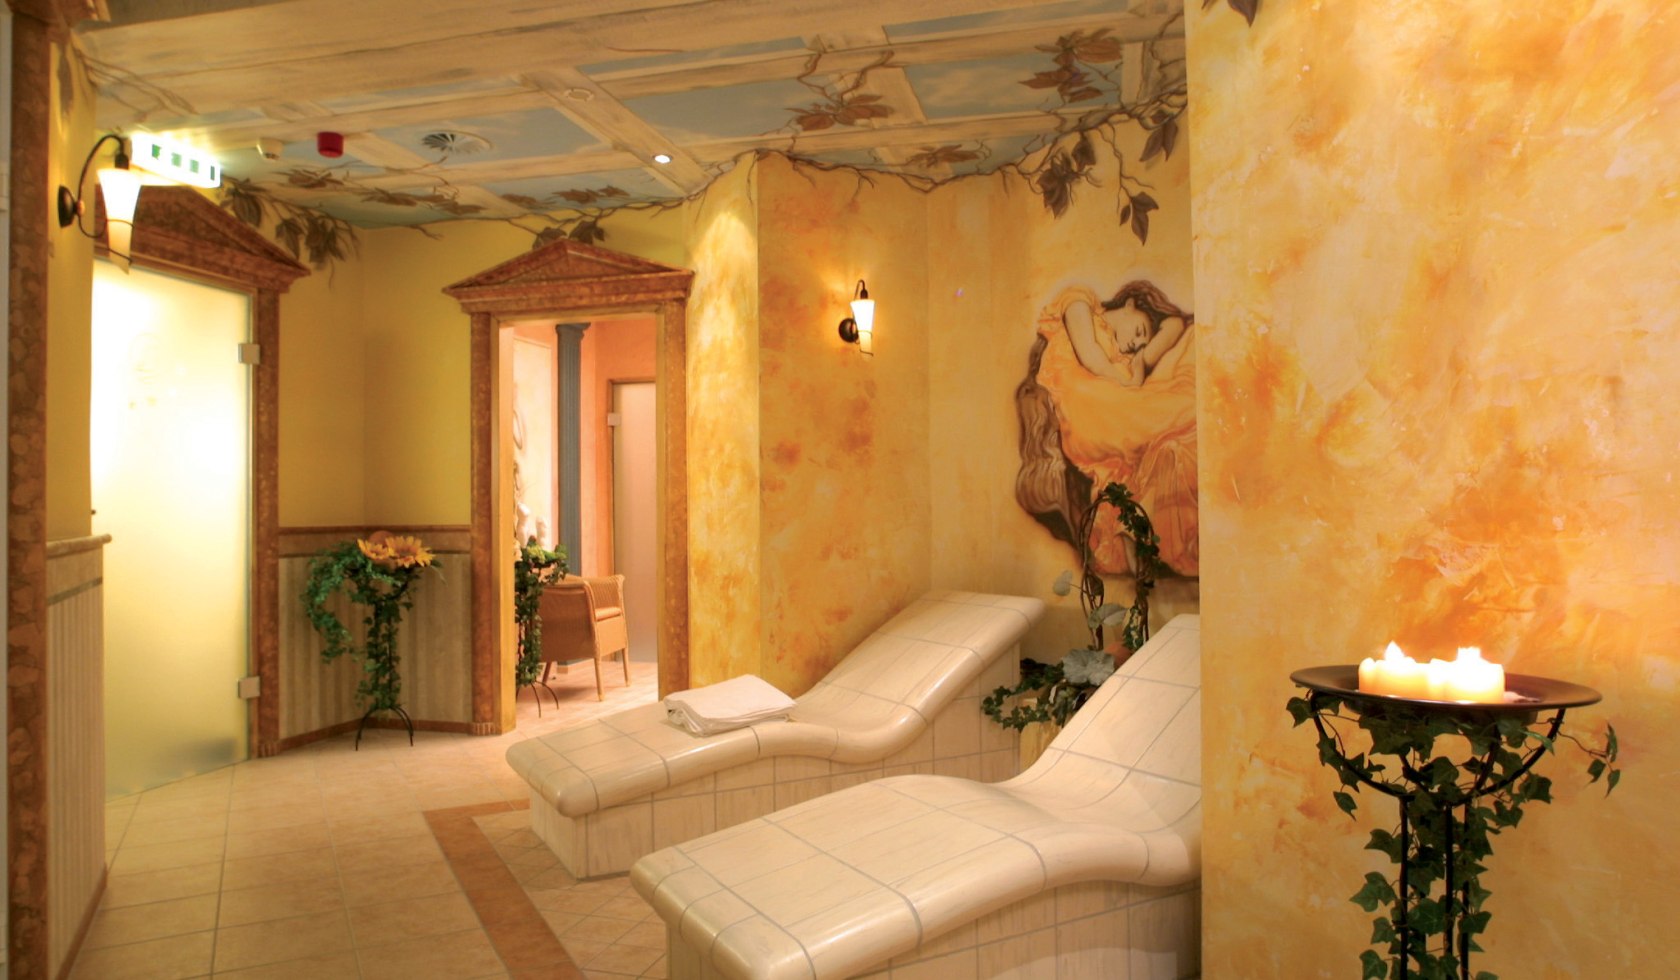 Saunabereich mit Wärmeliegen im Mühl Vital Resort, © MH Hotelbetriebsgesellschaft mbH